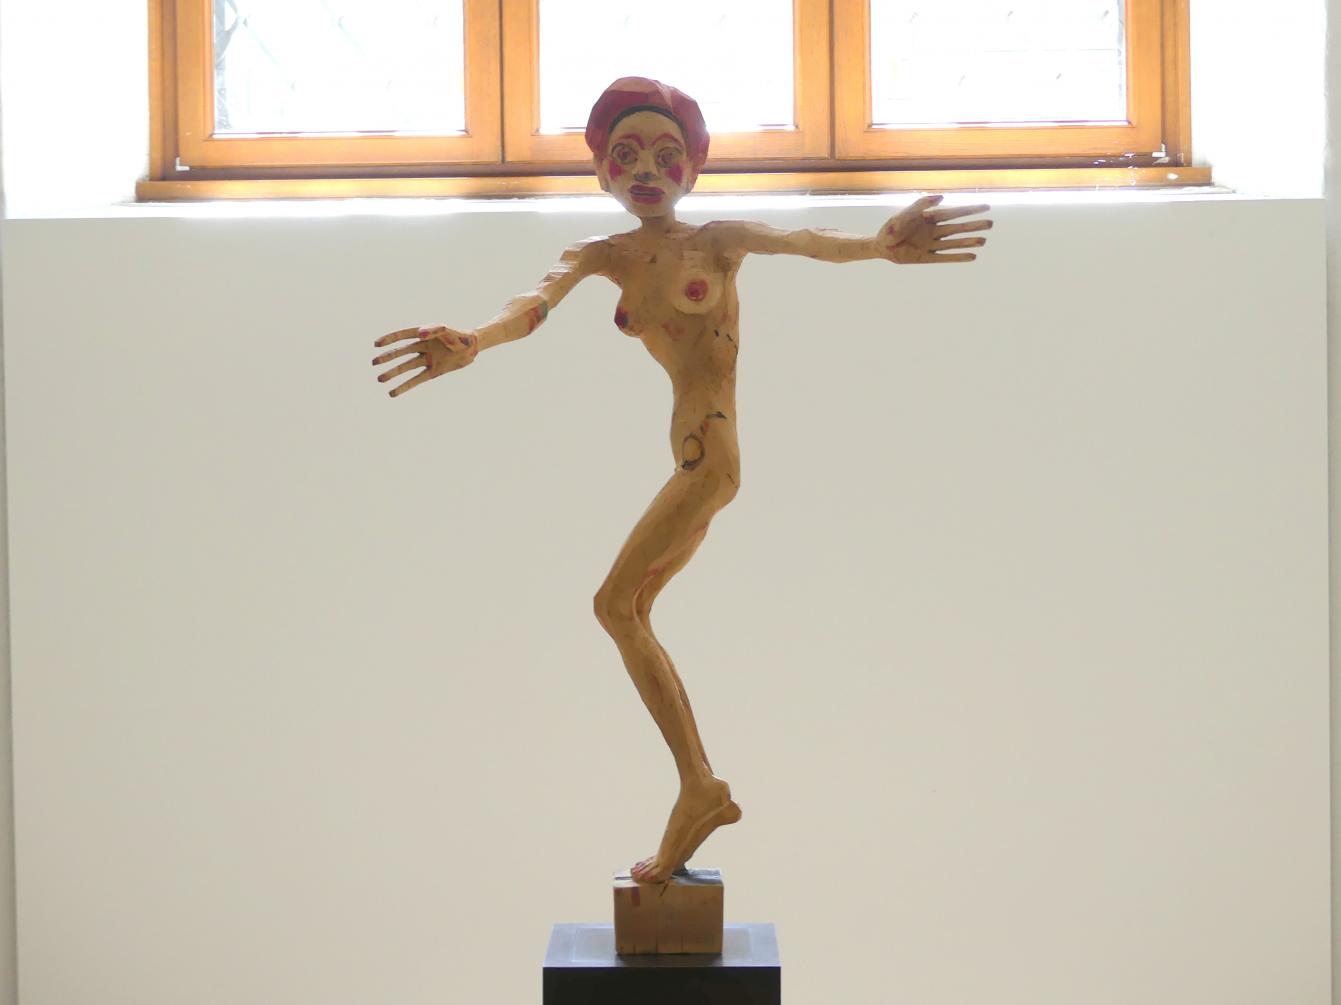 Hans Scheib (1997), Mit offenen Armen, Dresden, Albertinum, Galerie Neue Meister, Erdgeschoss, Skulpturenhalle, 1997